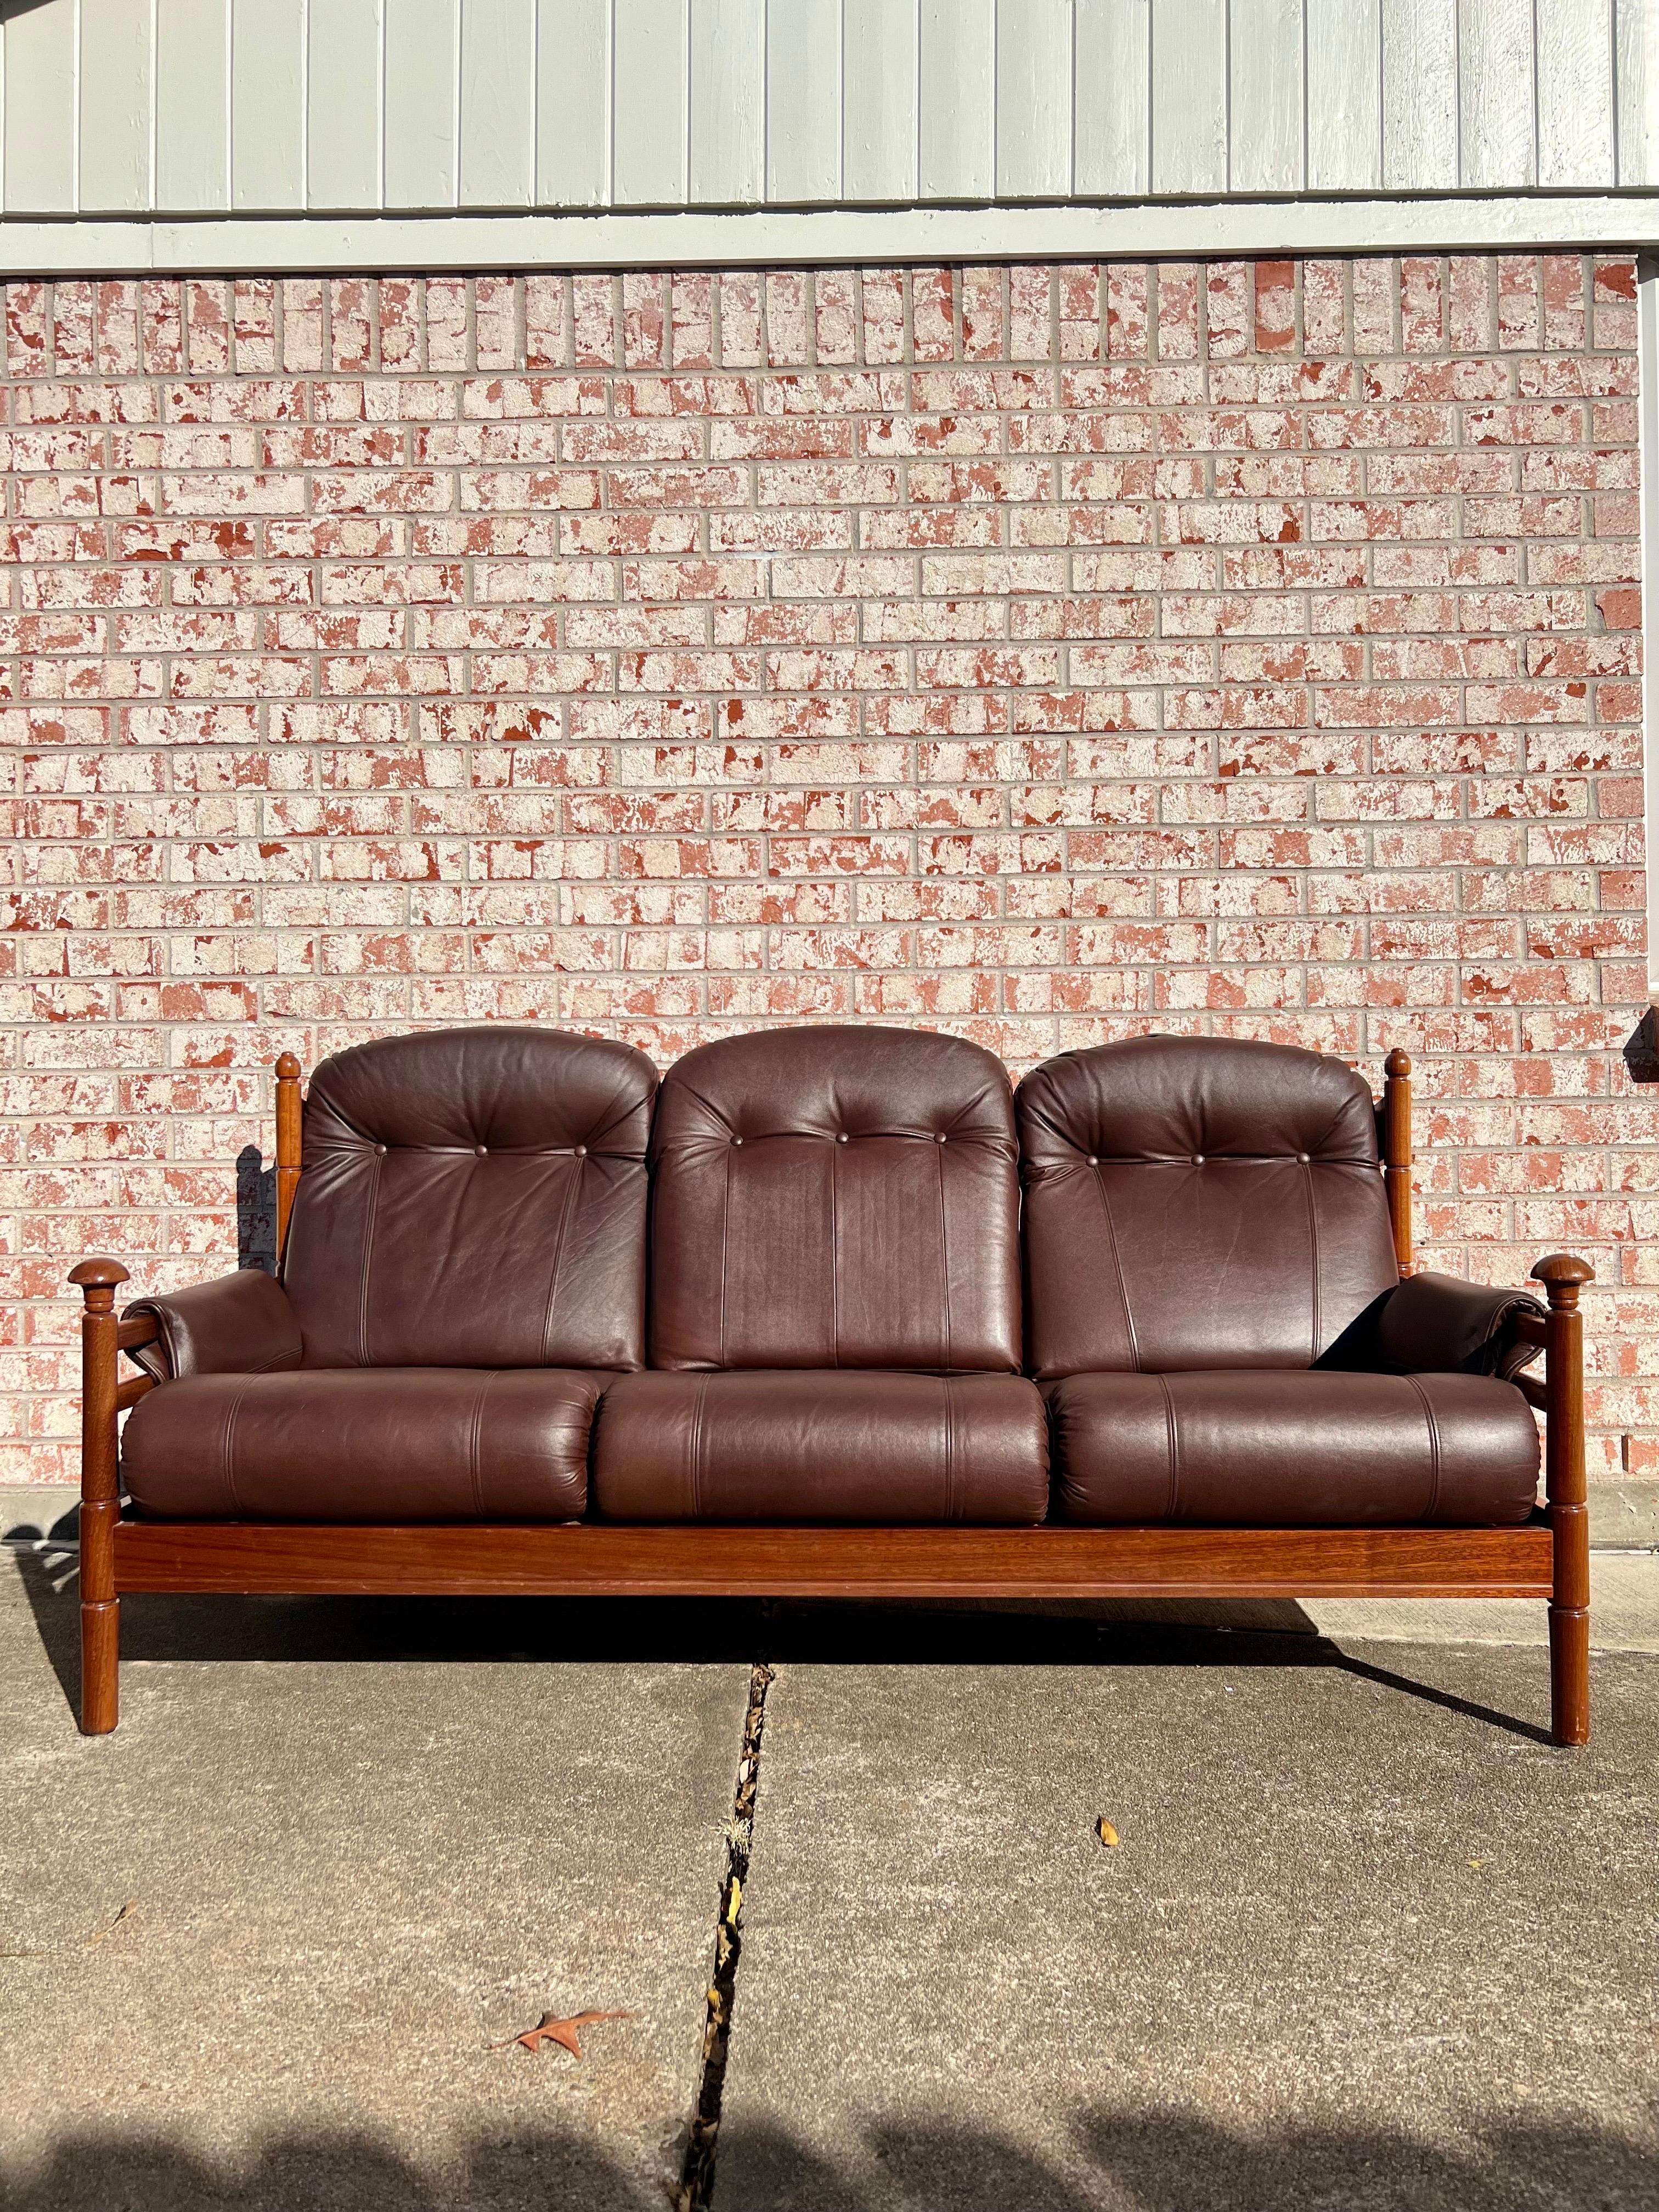 reid's leather sofas